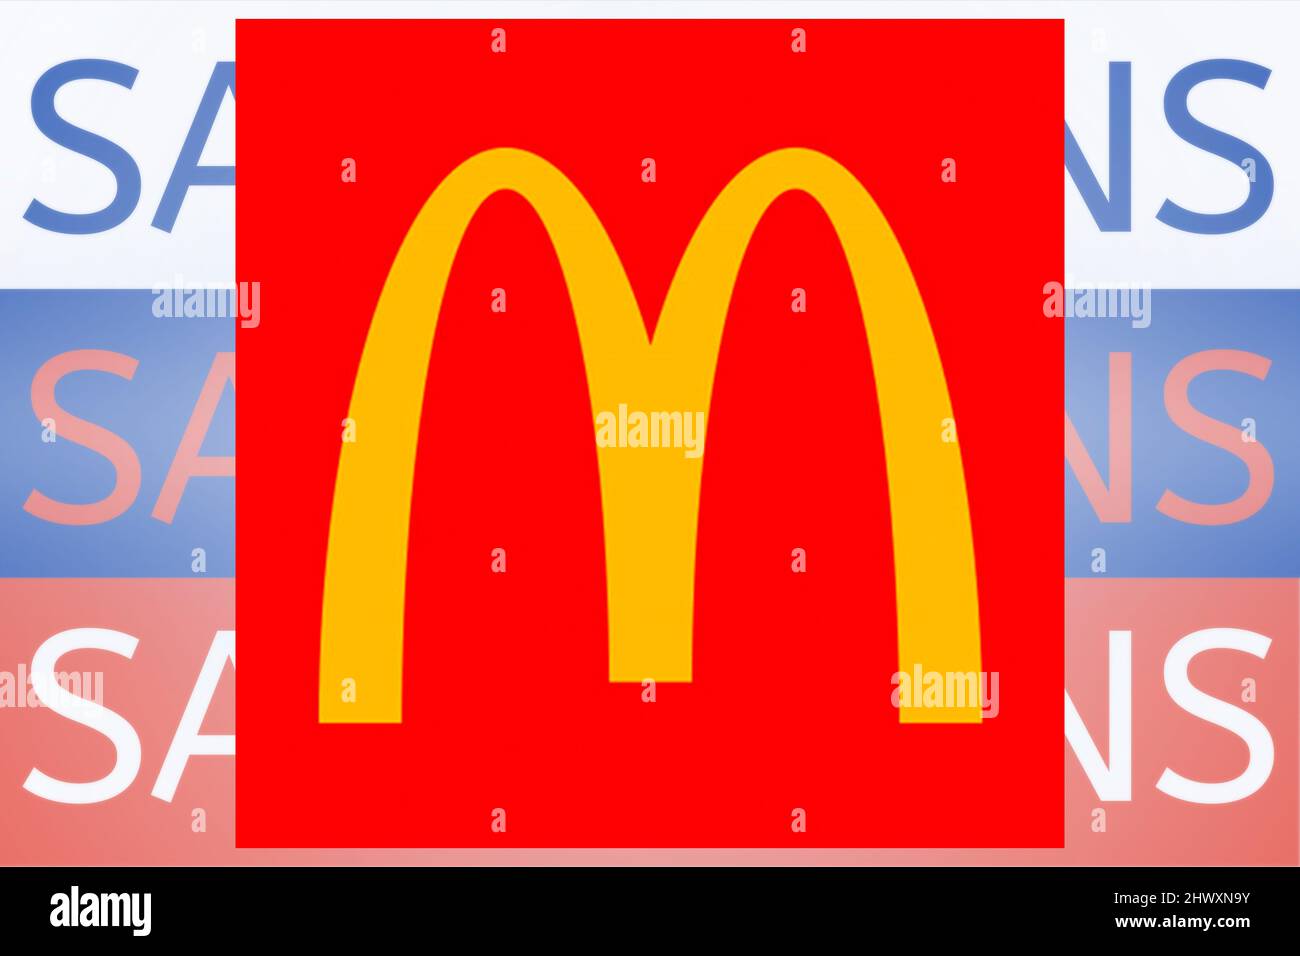 McDonalds-Logo vor dem Sanktionstext auf der russischen Flagge. Neue Sanktionen gegen Russland wegen seiner Invasion in der Ukraine. Stockfoto